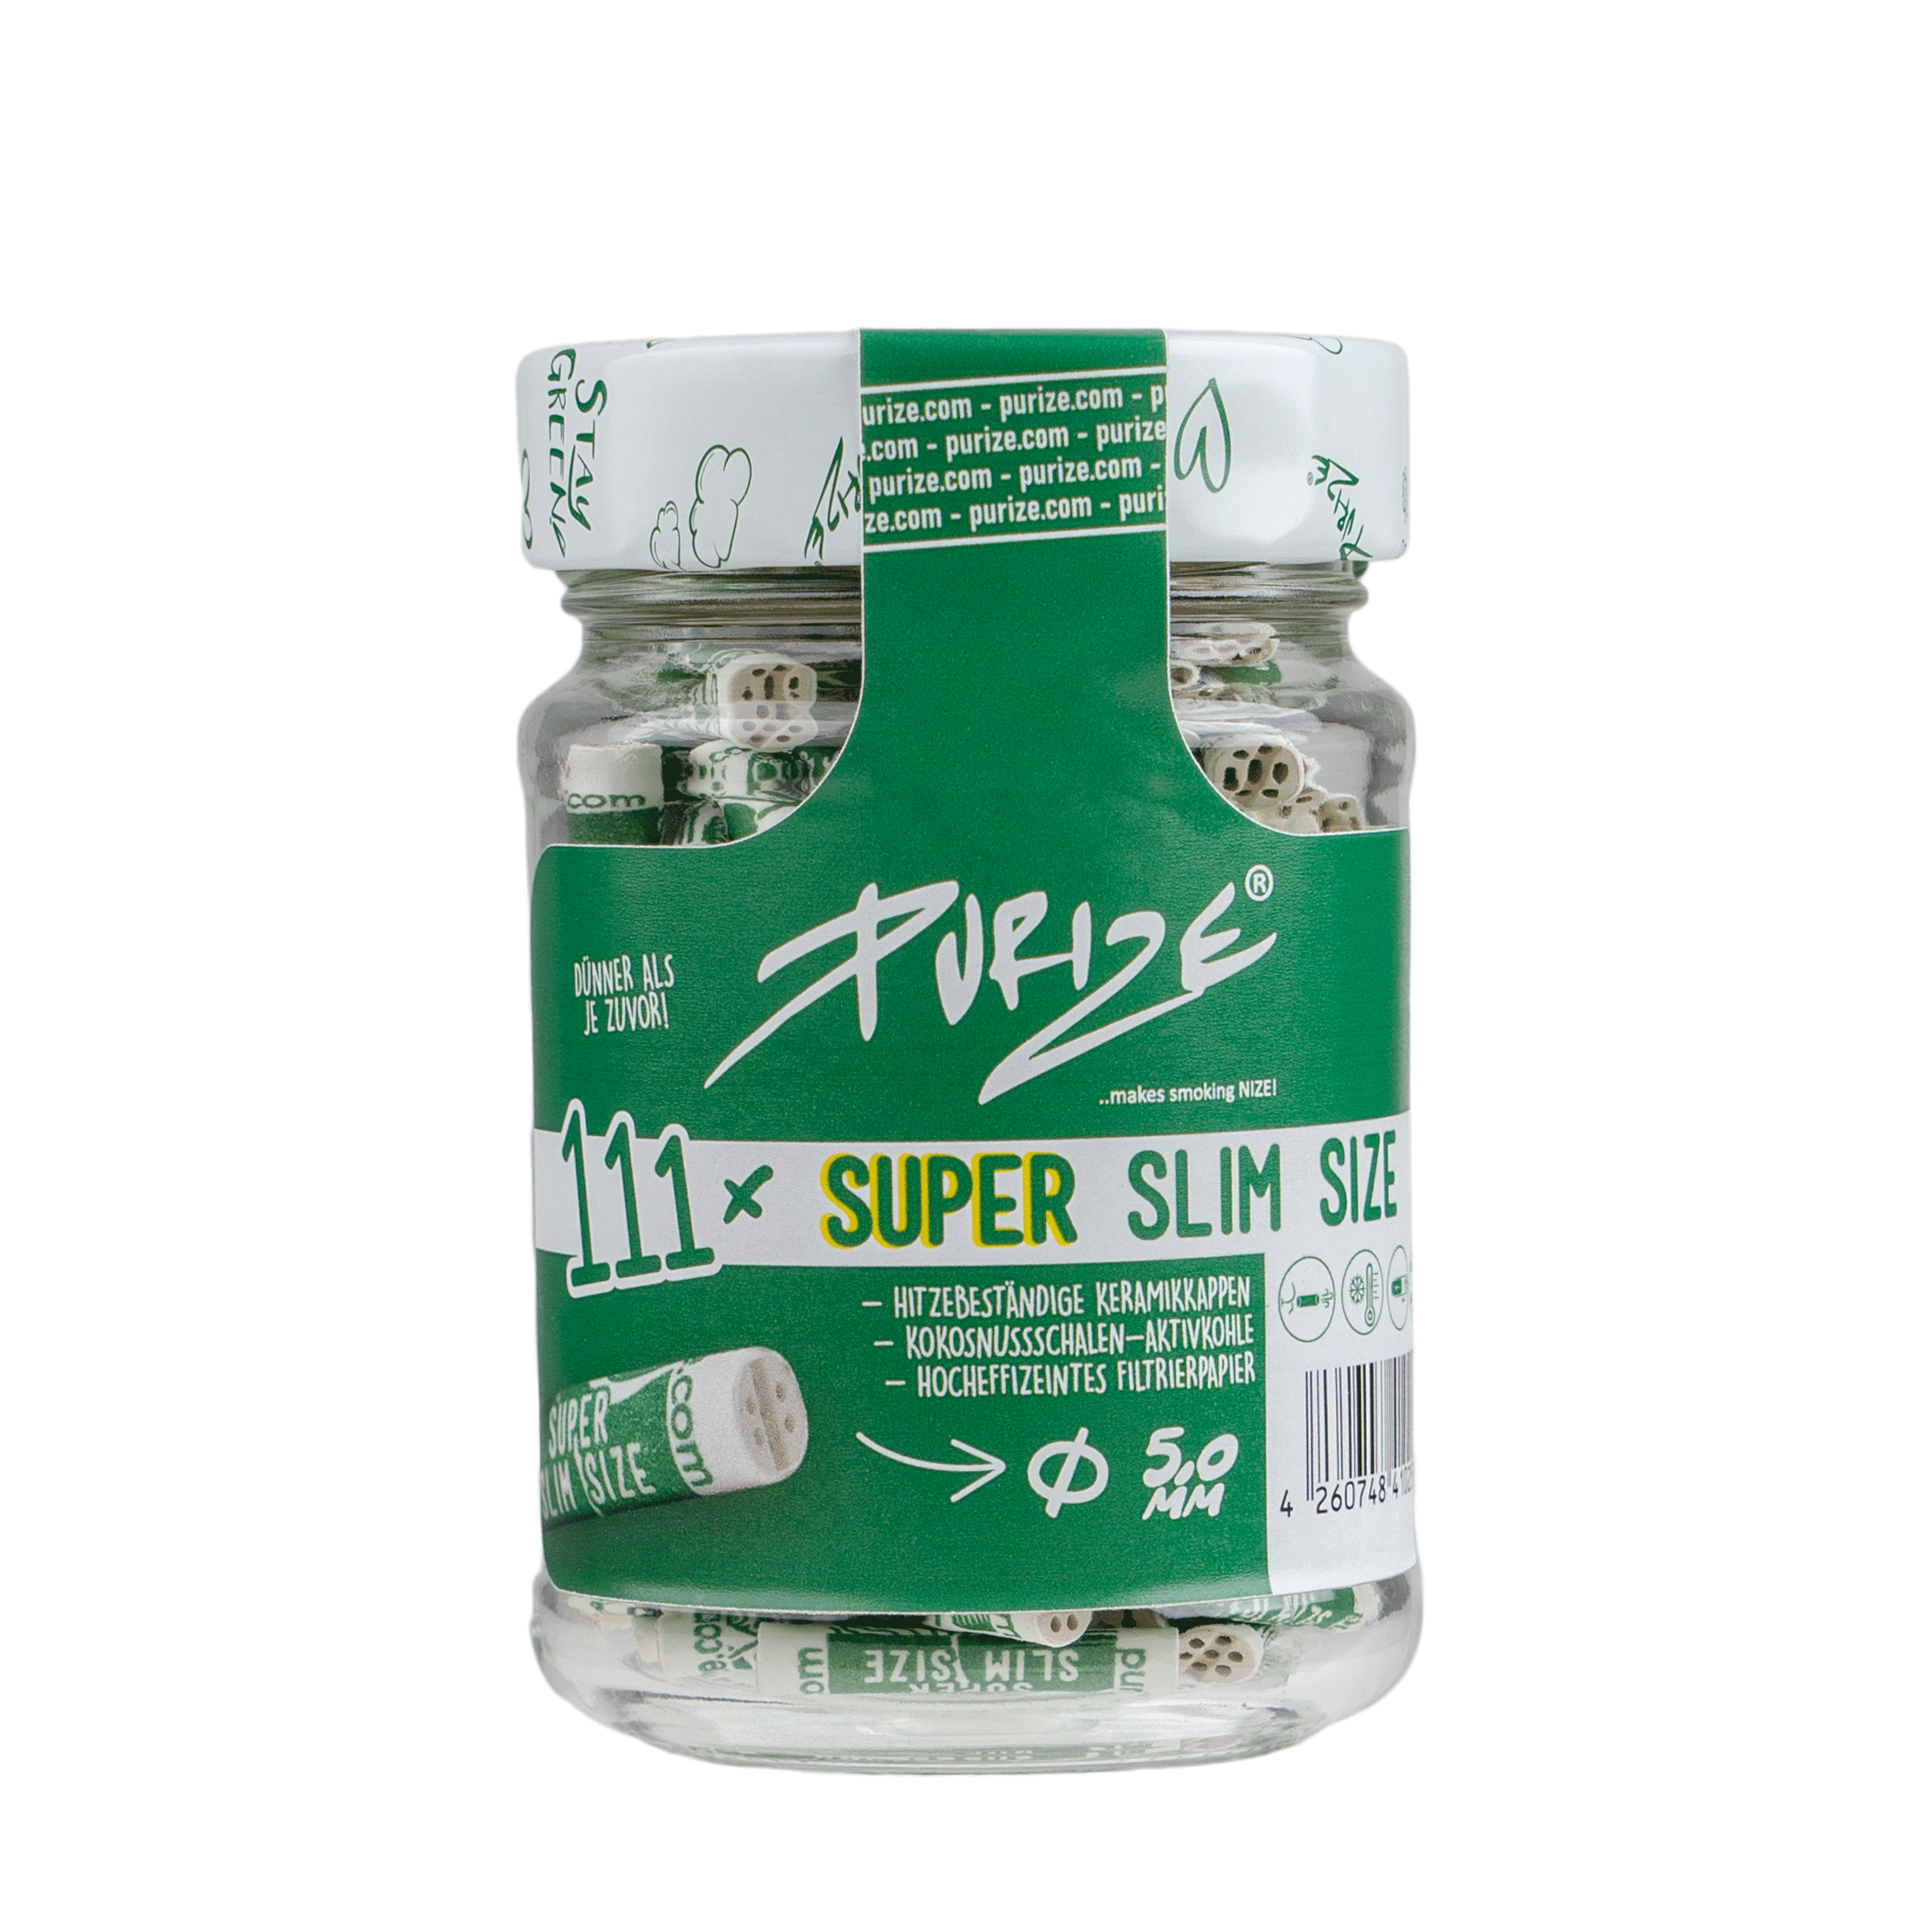 PURIZE® Glas | 111 SUPER Slim Size Aktivkohlefilter